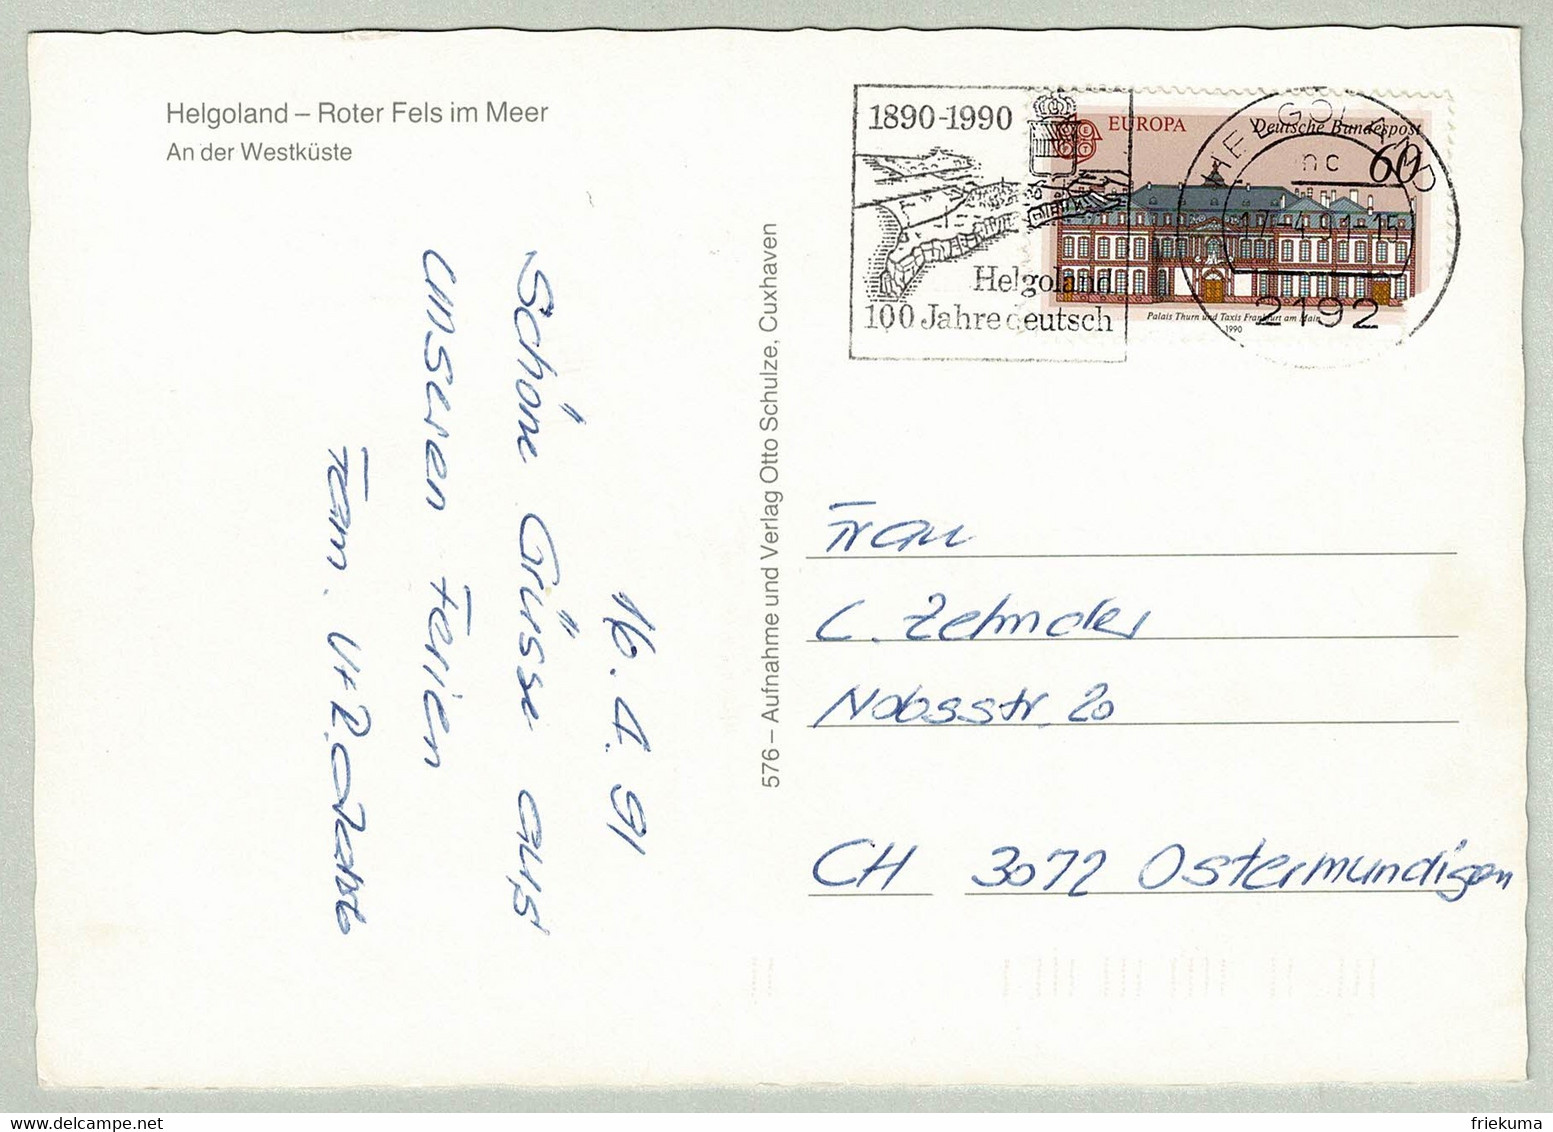 Deutsche Bundespost 1991, Postkarte Helgoland - Ostermundigen (Schweiz), Insel / Ile / Island - Islands